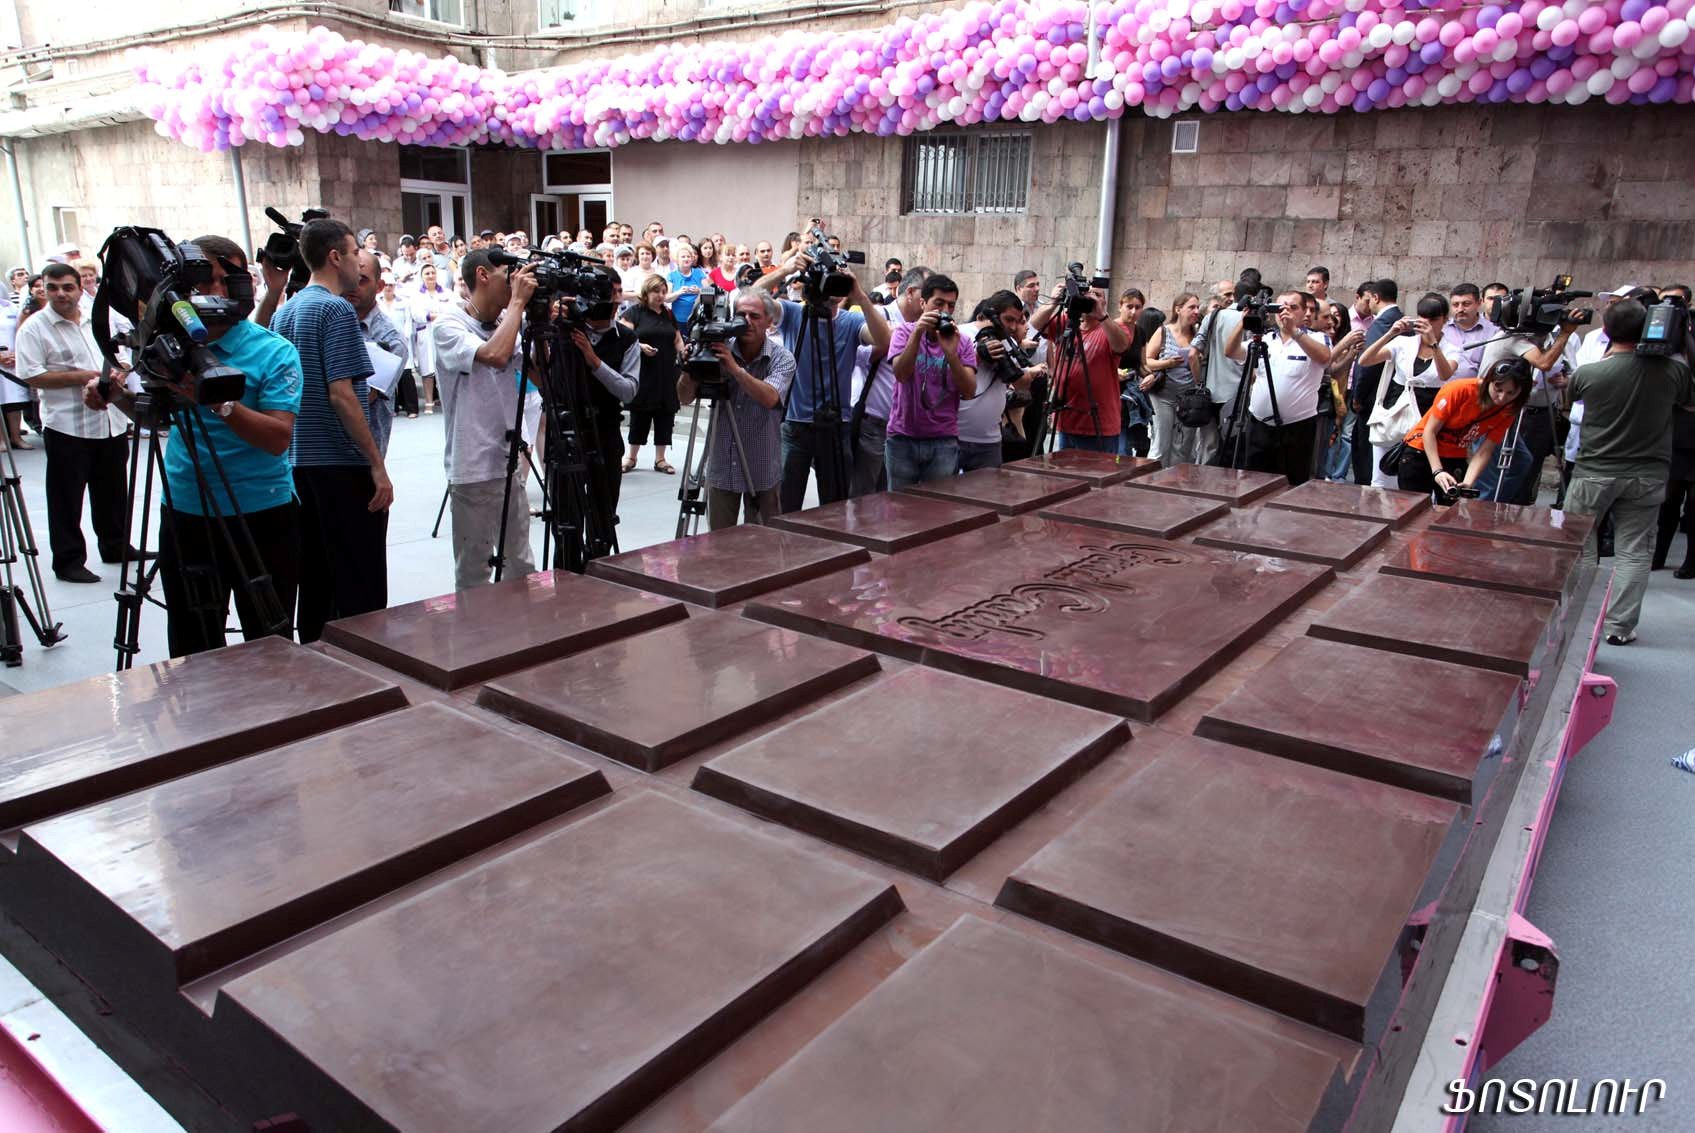 1 5 плитки шоколада. Самый большой шоколад в мире рекорд Гиннесса. Самая гигантская шоколадка в мире. Самая крупная плитка шоколада книга рекордов Гиннесса. Самая большая шоколадная плитка в мире.